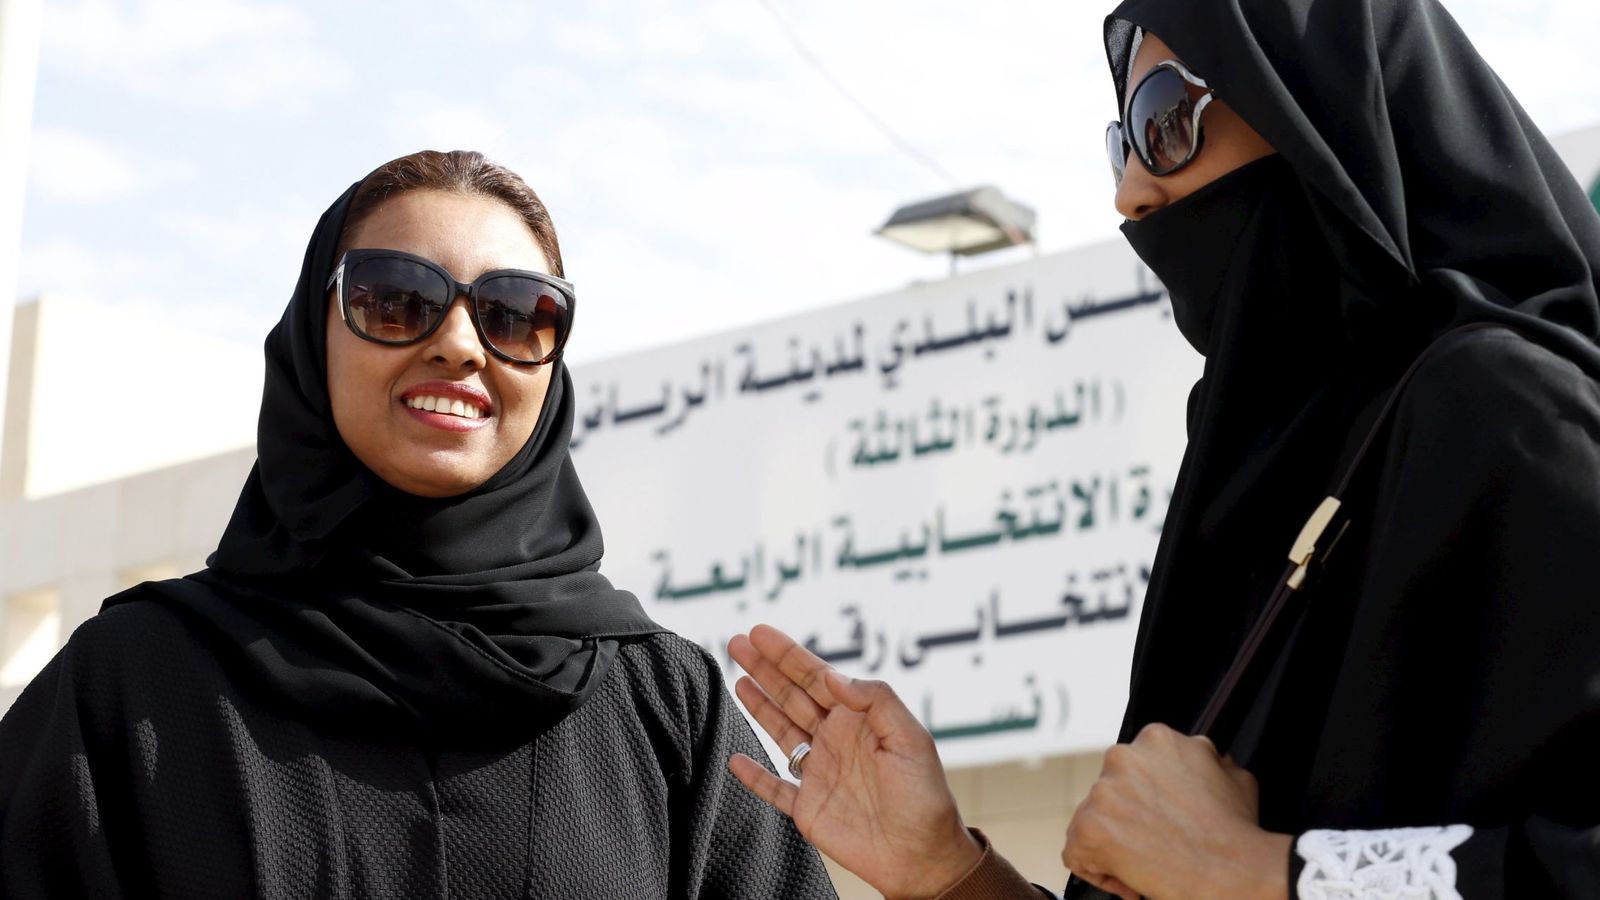 Ley acaba con insólita práctica de divorcios secretos en Arabia Saudí